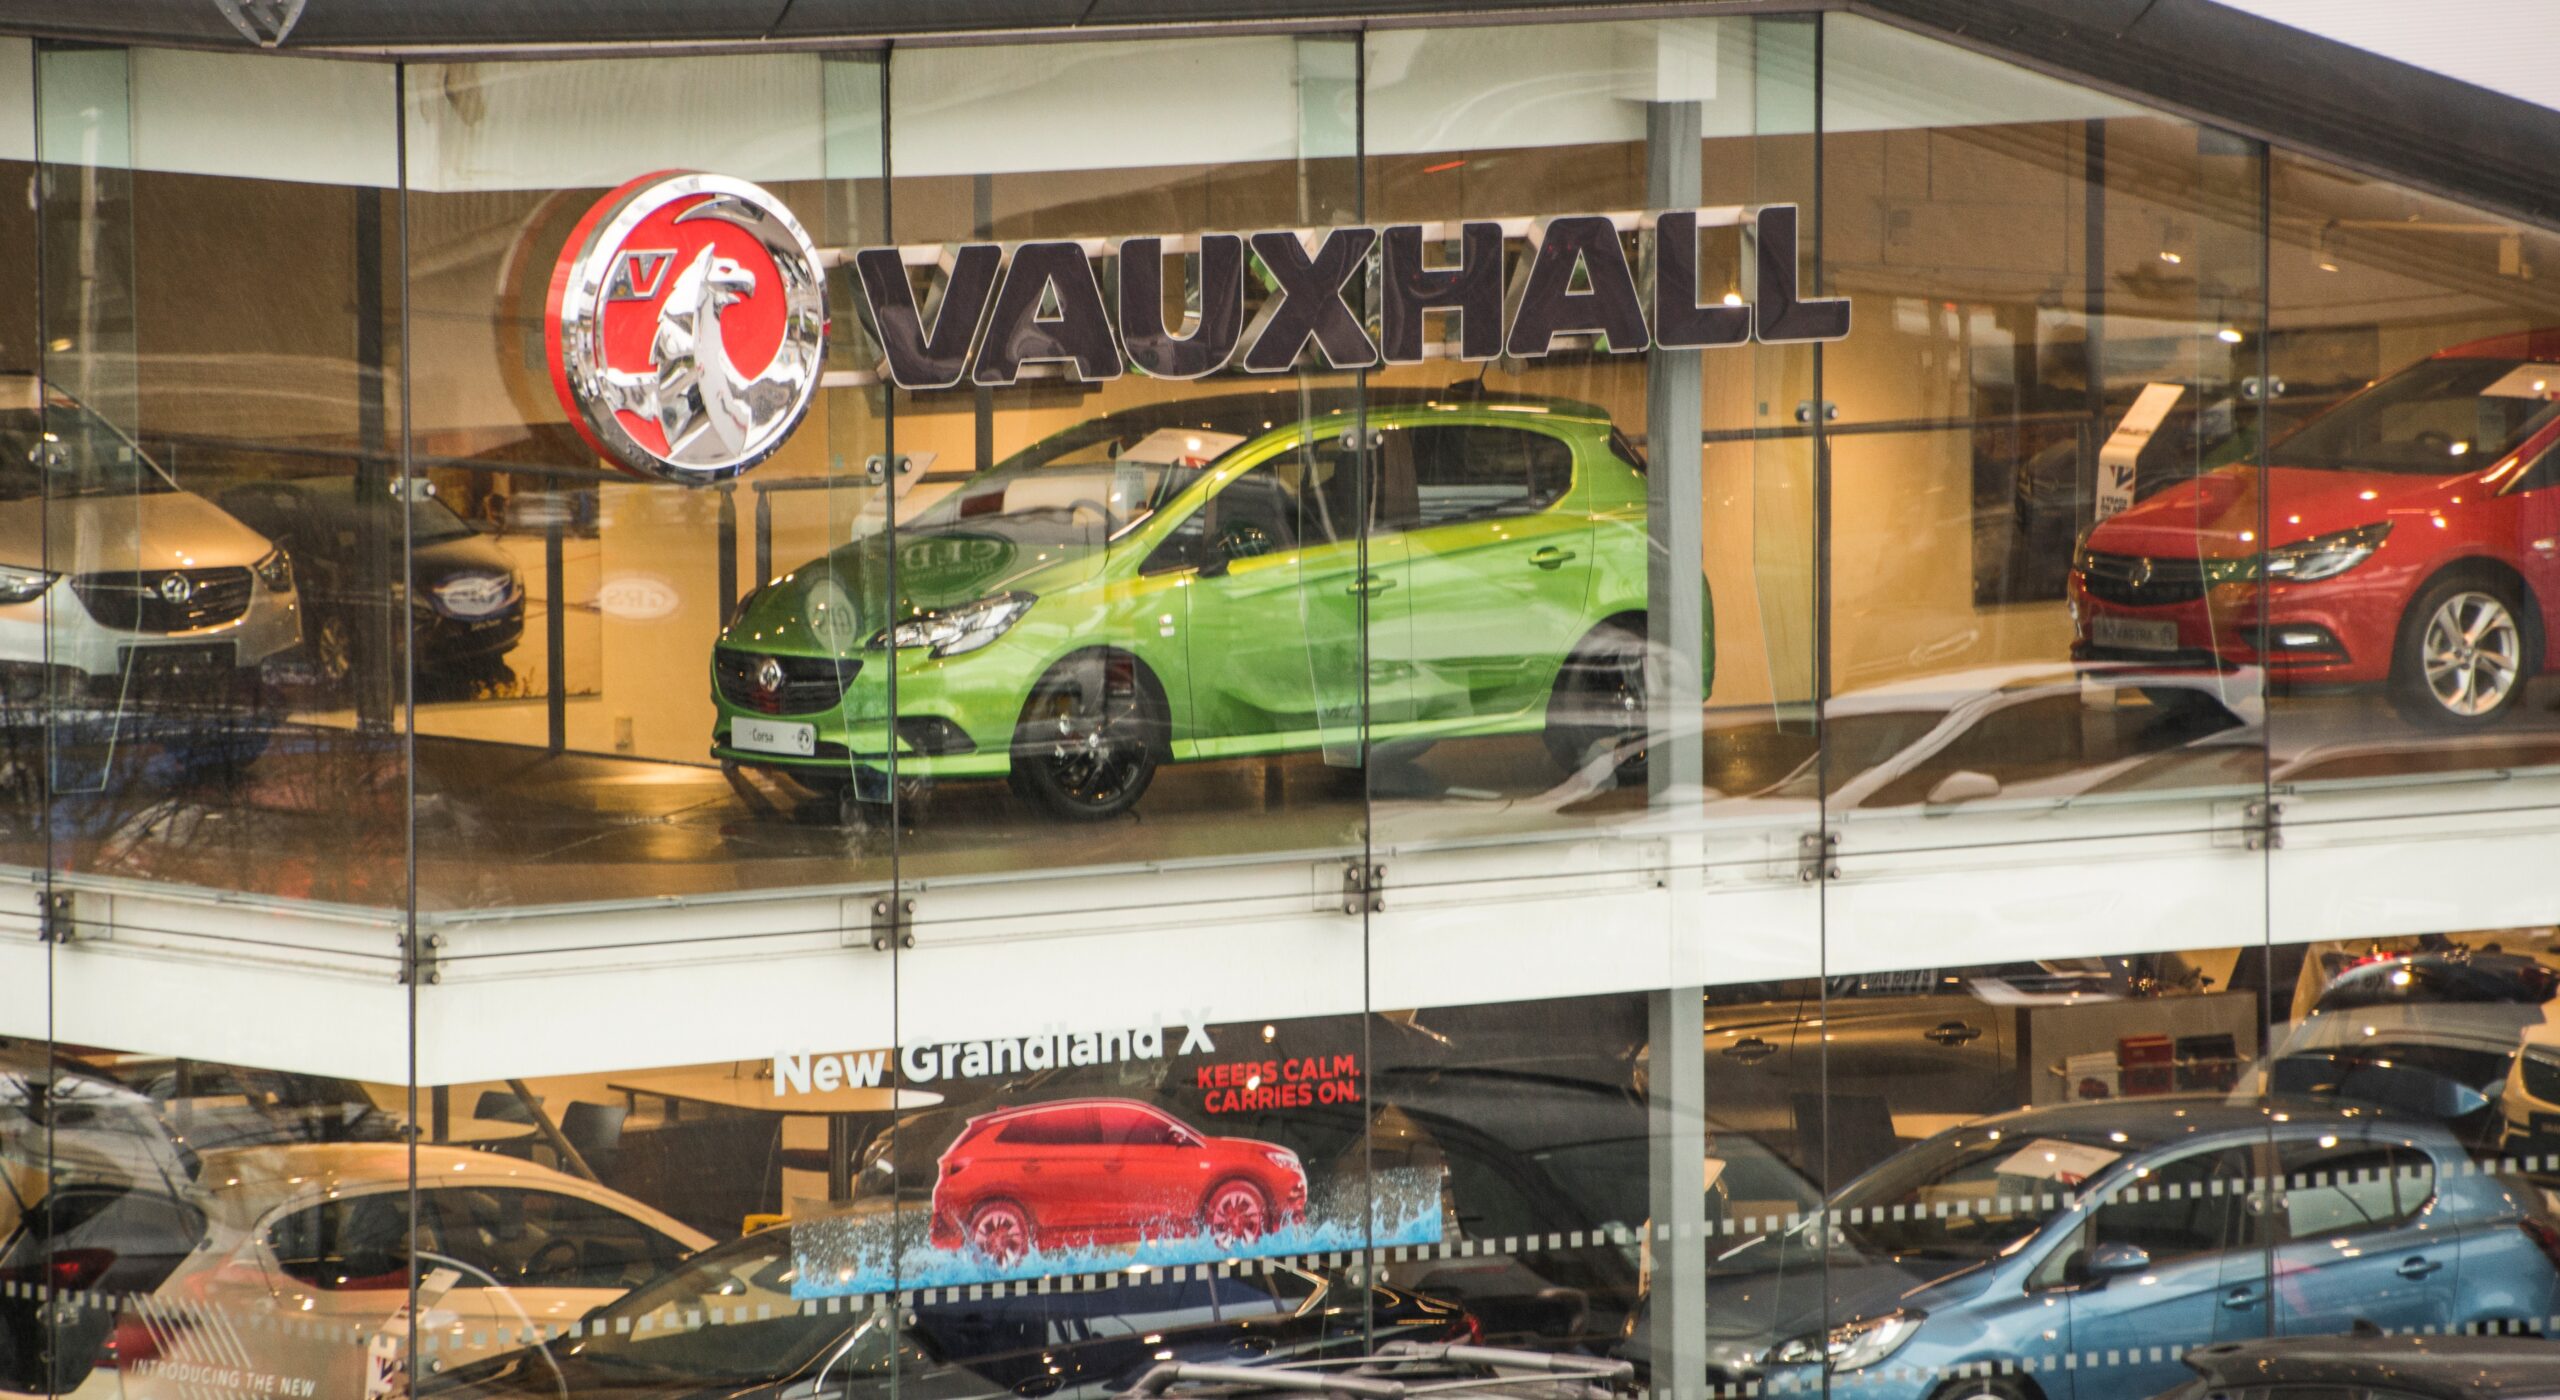 Crossland හි replacement එක සඳහා Vauxhall Frontera නම නැවත පැමිණීම 2024 වර්ෂයේදී